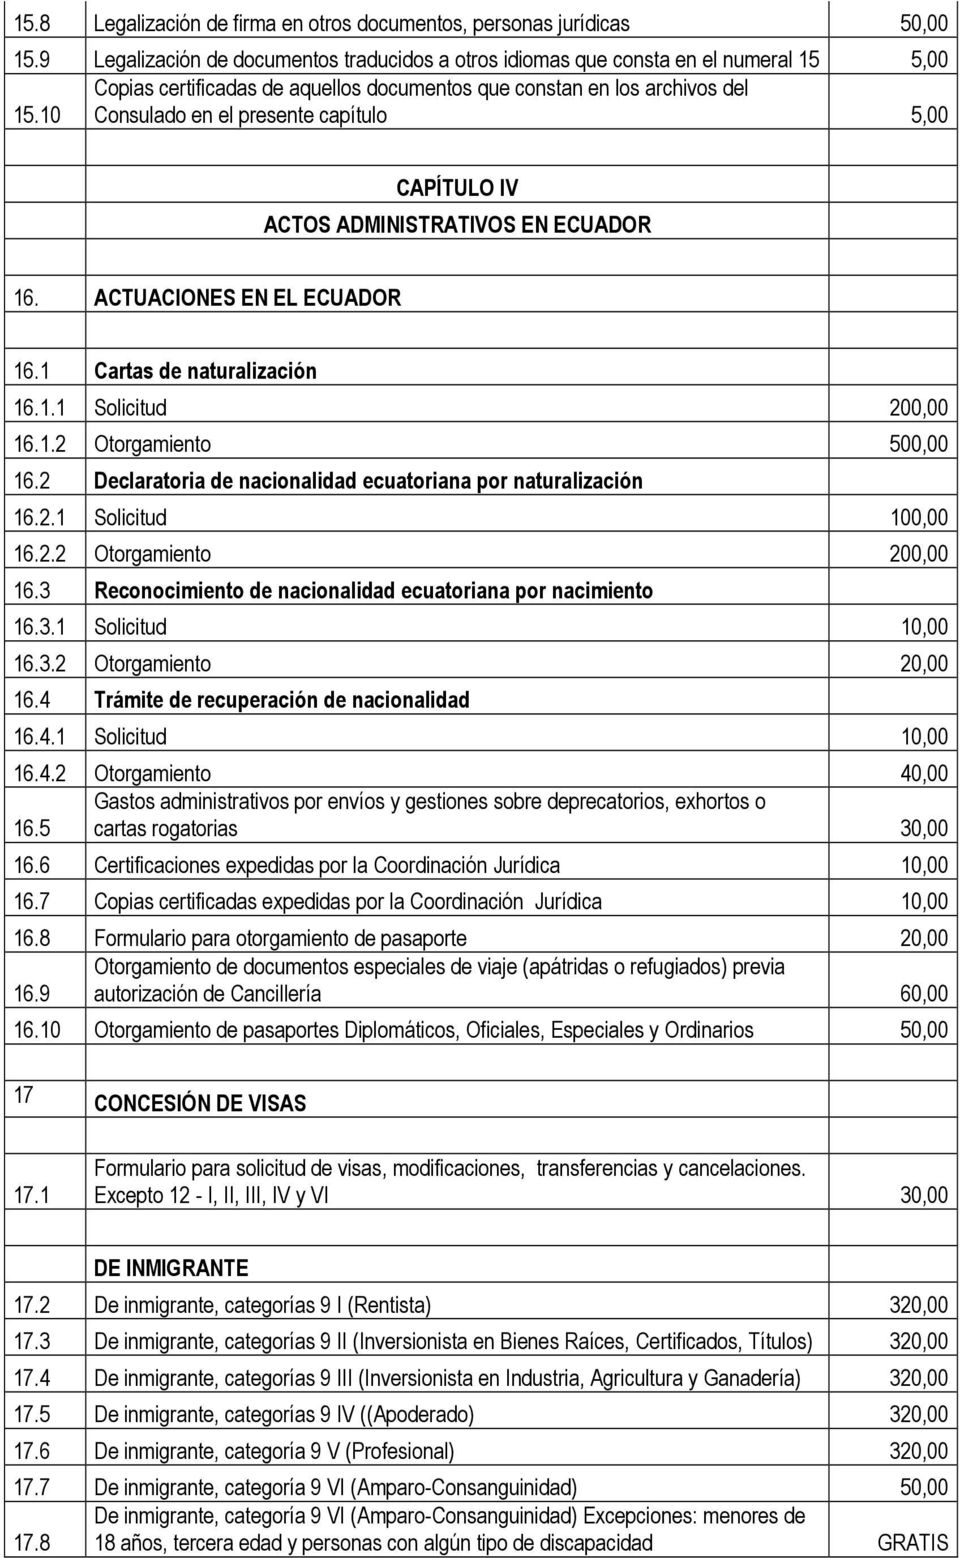 10 Consulado en el presente capítulo 5,00 CAPÍTULO IV ACTOS ADMINISTRATIVOS EN ECUADOR 16. ACTUACIONES EN EL ECUADOR 16.1 Cartas de naturalización 16.1.1 Solicitud 200,00 16.1.2 Otorgamiento 500,00 16.